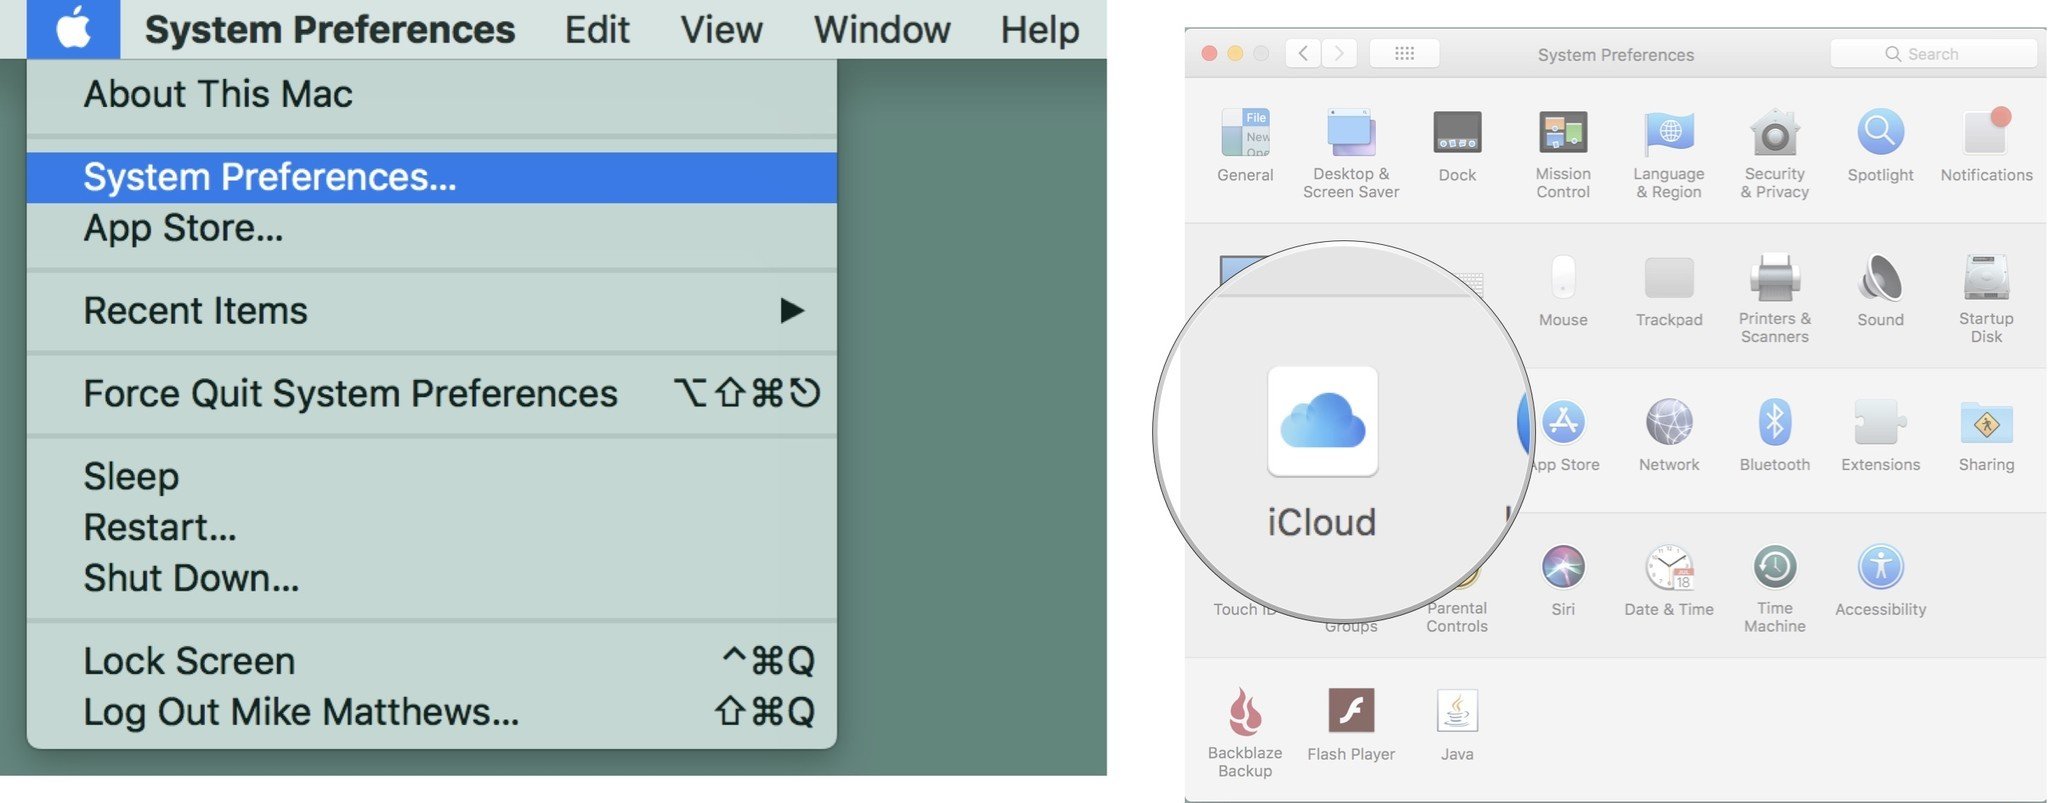 Добавление дочерней учетной записи: выберите «Системные настройки», затем нажмите «iCloud».